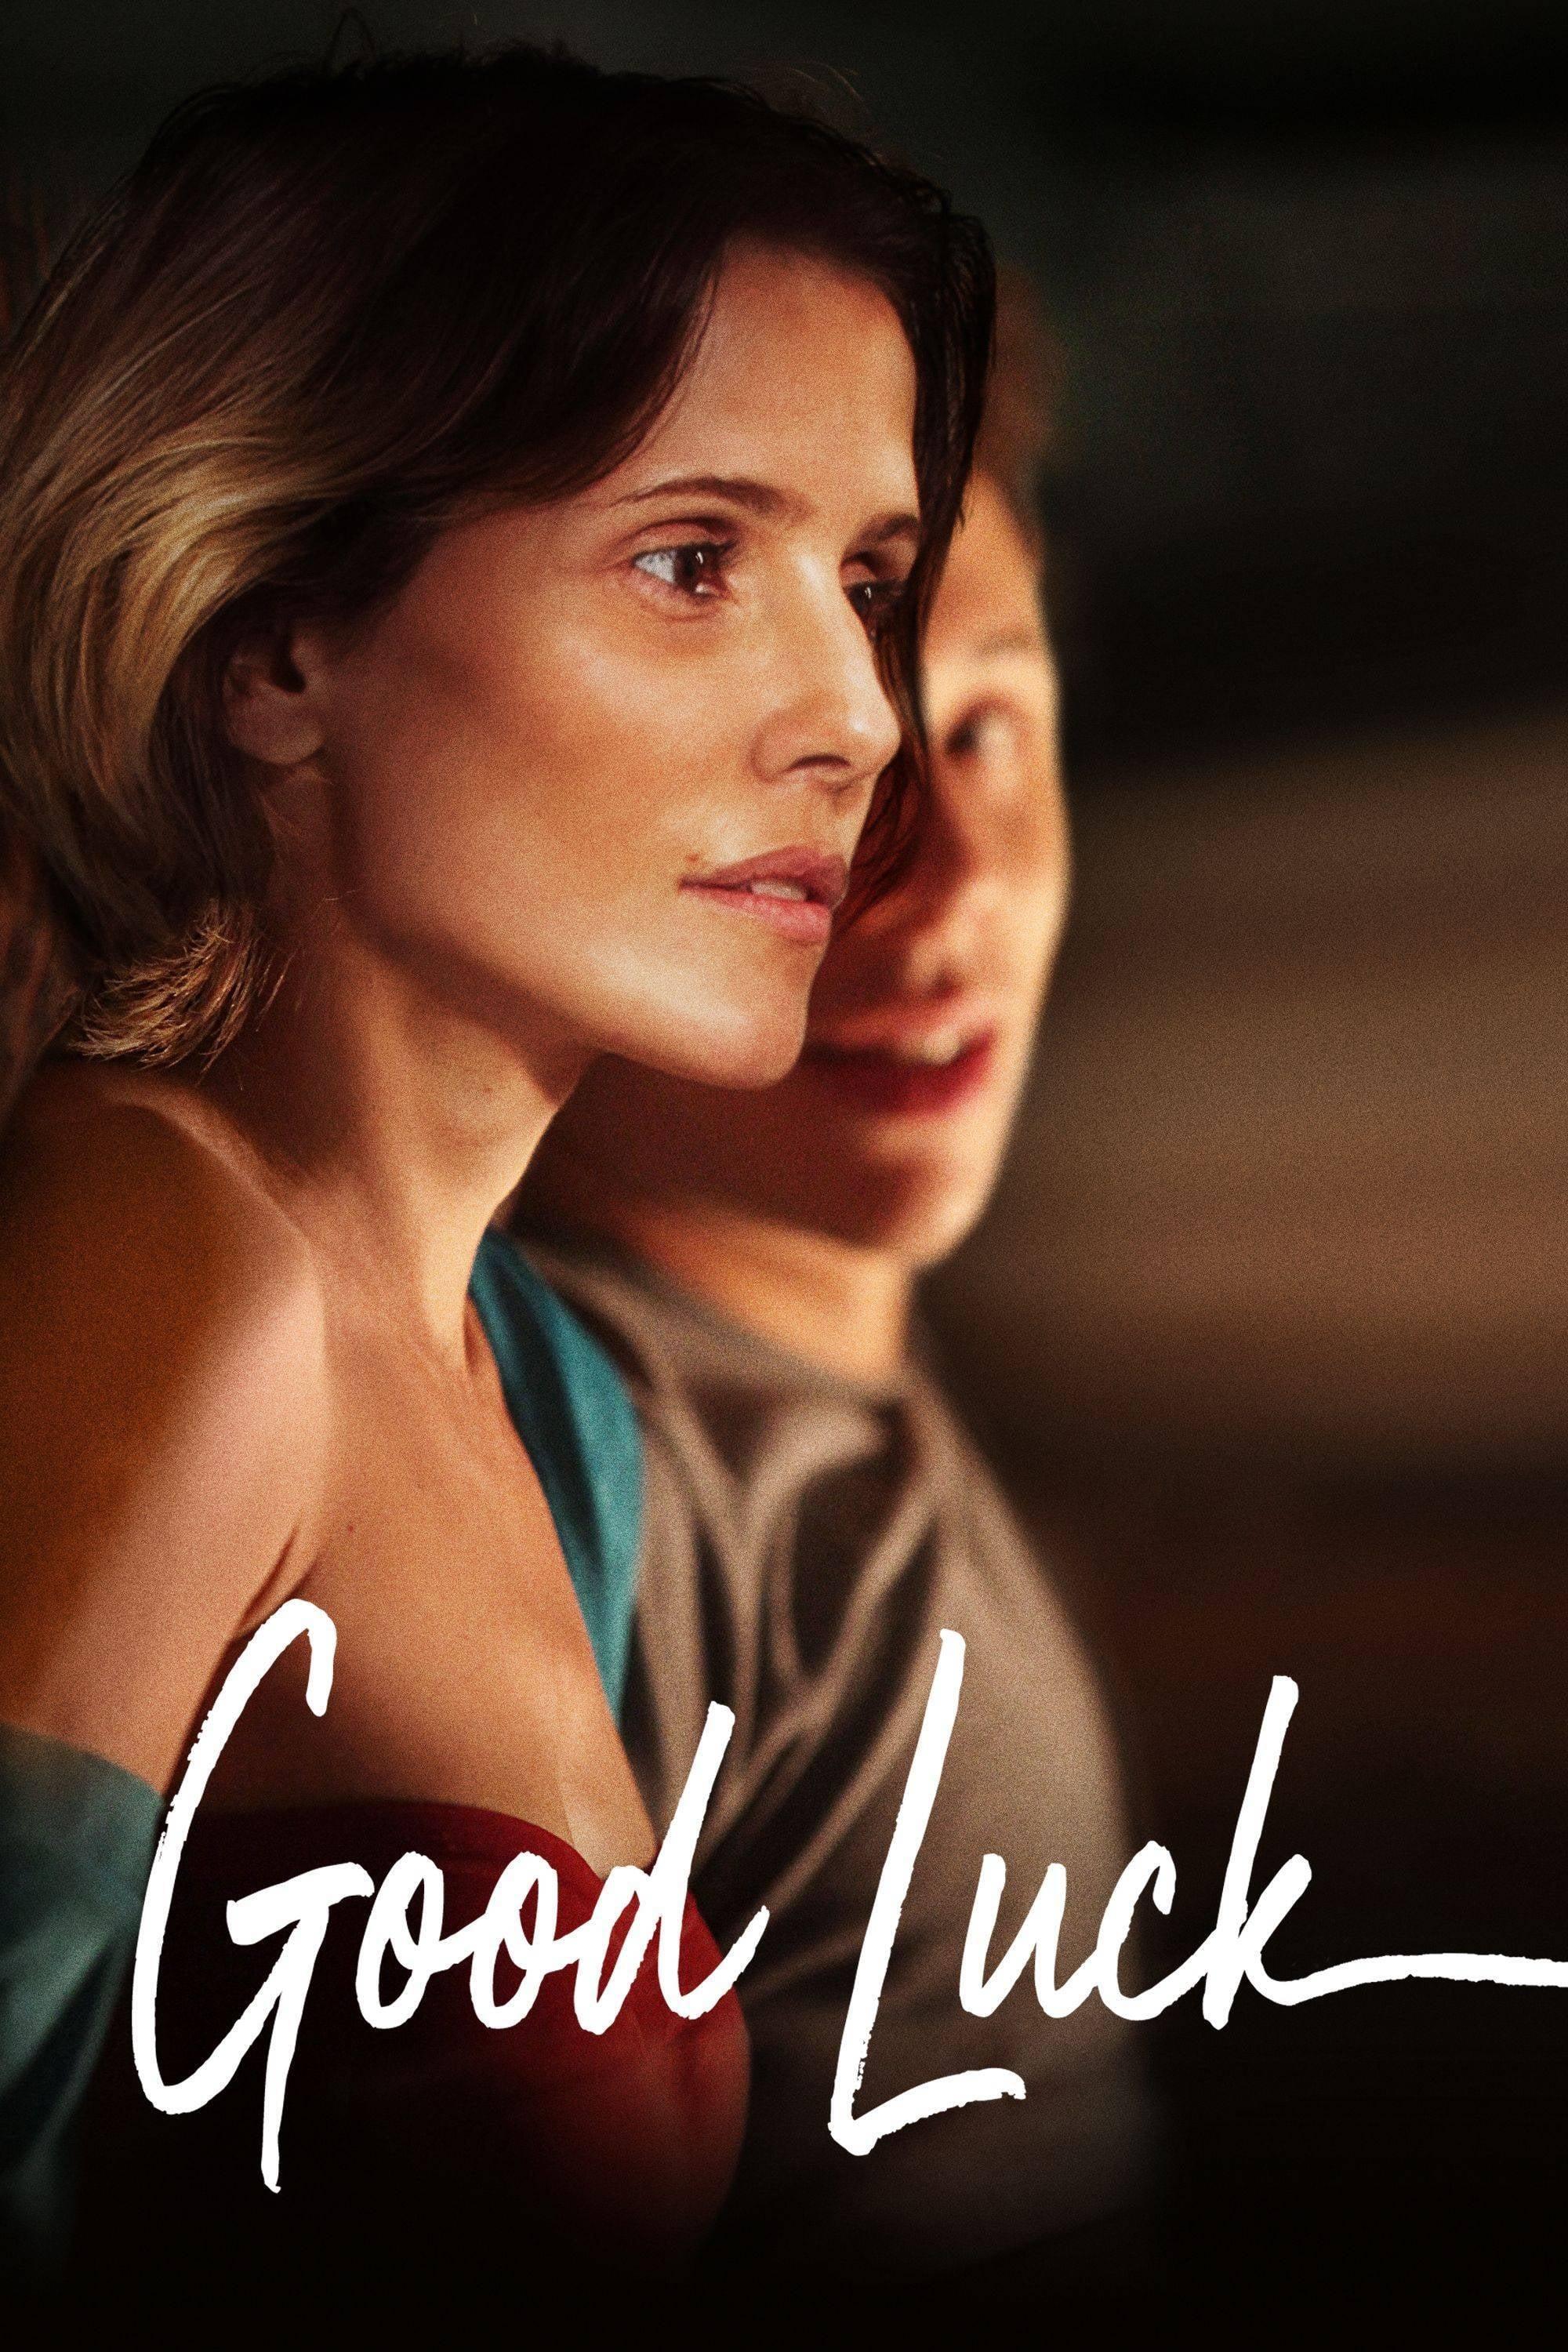 Good Luck poster